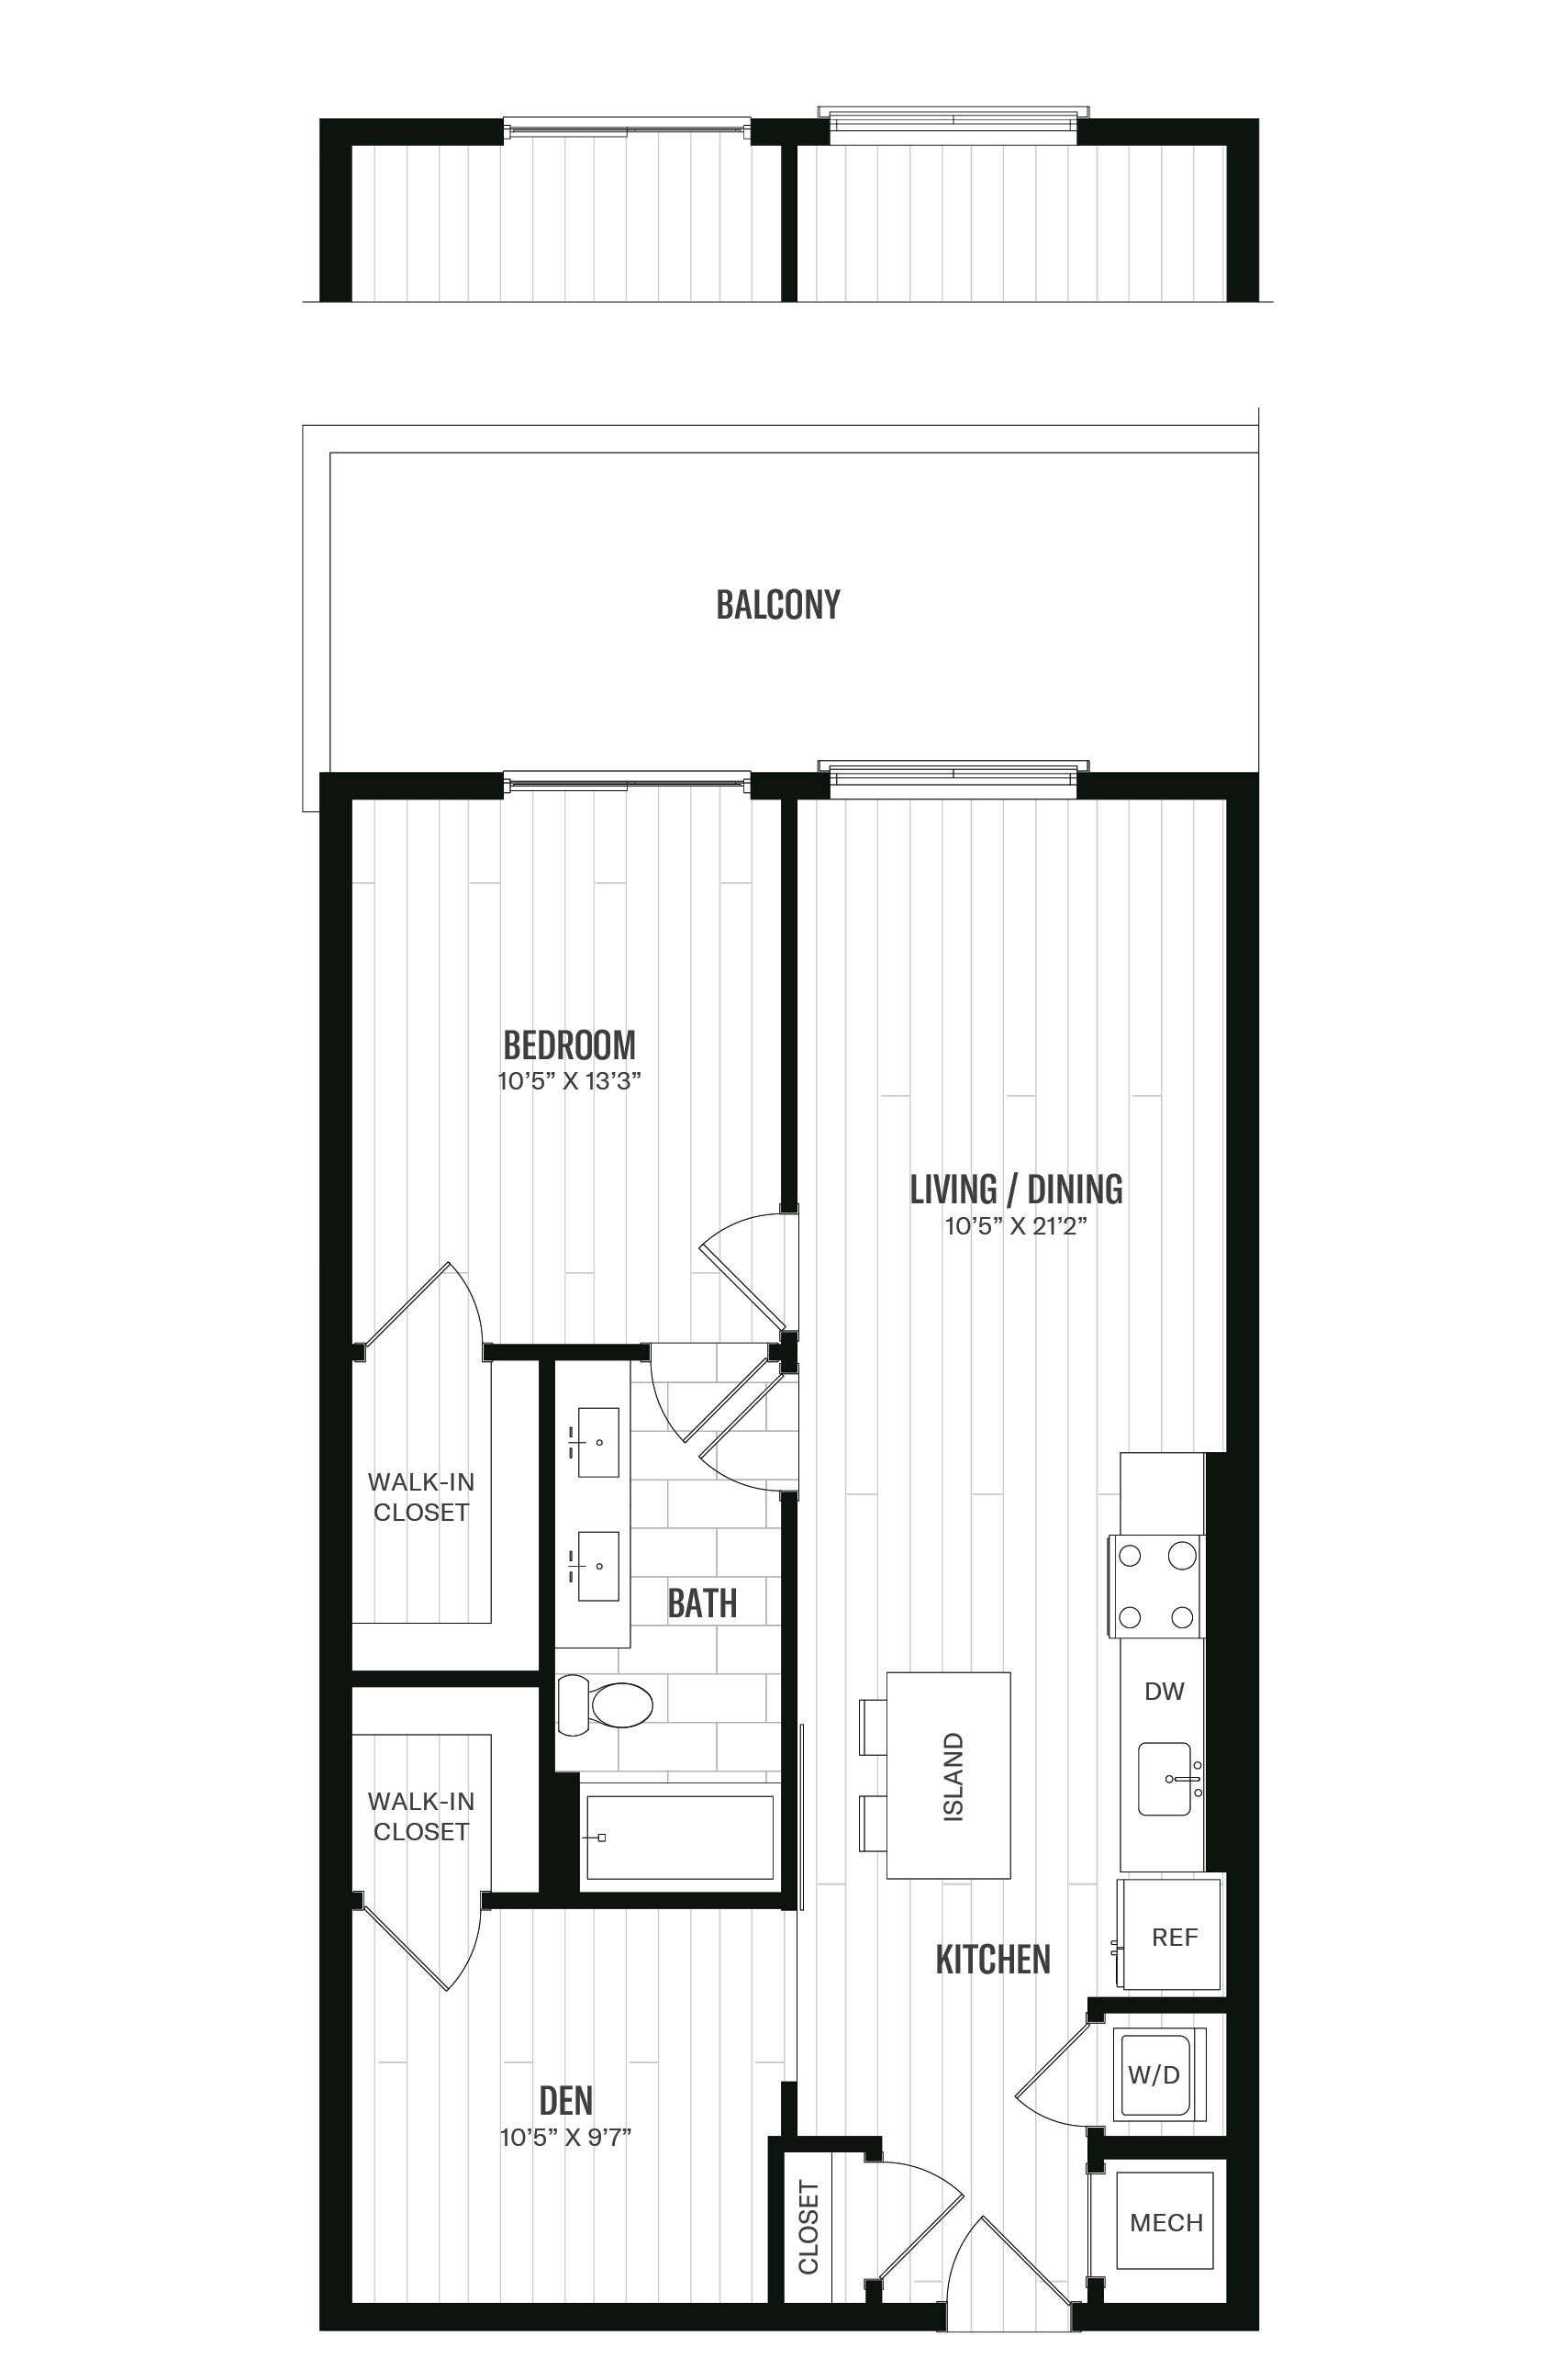 Floorplan image of unit 230